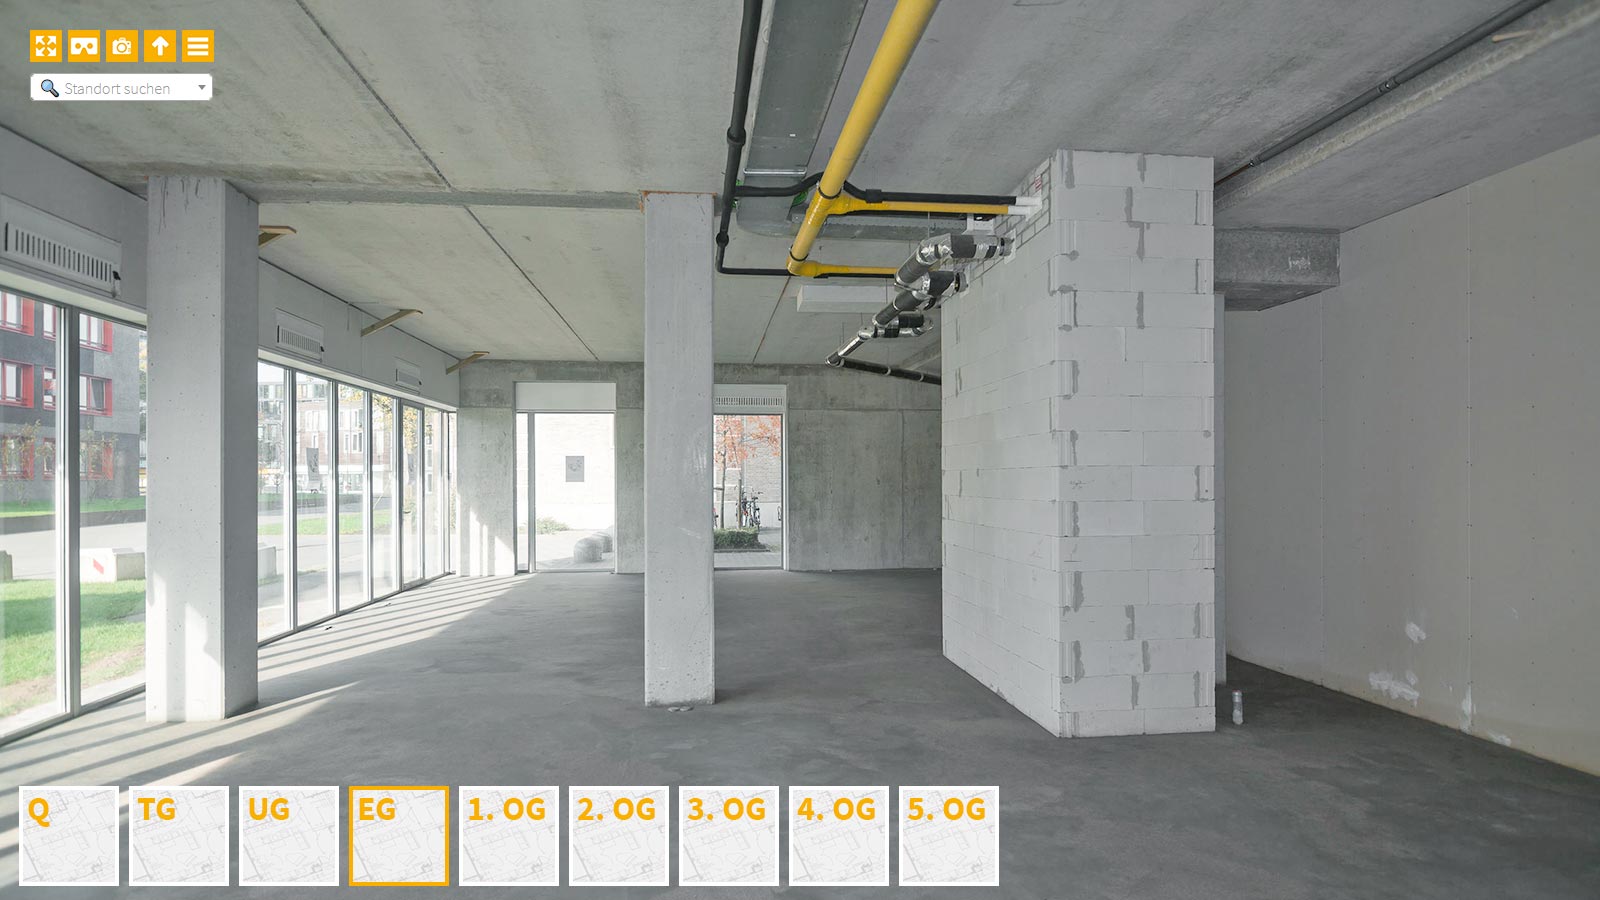 Baudokumentation 360 Grad bei gestörten Projekten in 


	


	


	


	


	


	


	


	


	


	Hamm









, Bilddokumentation als virtueller Rundgang